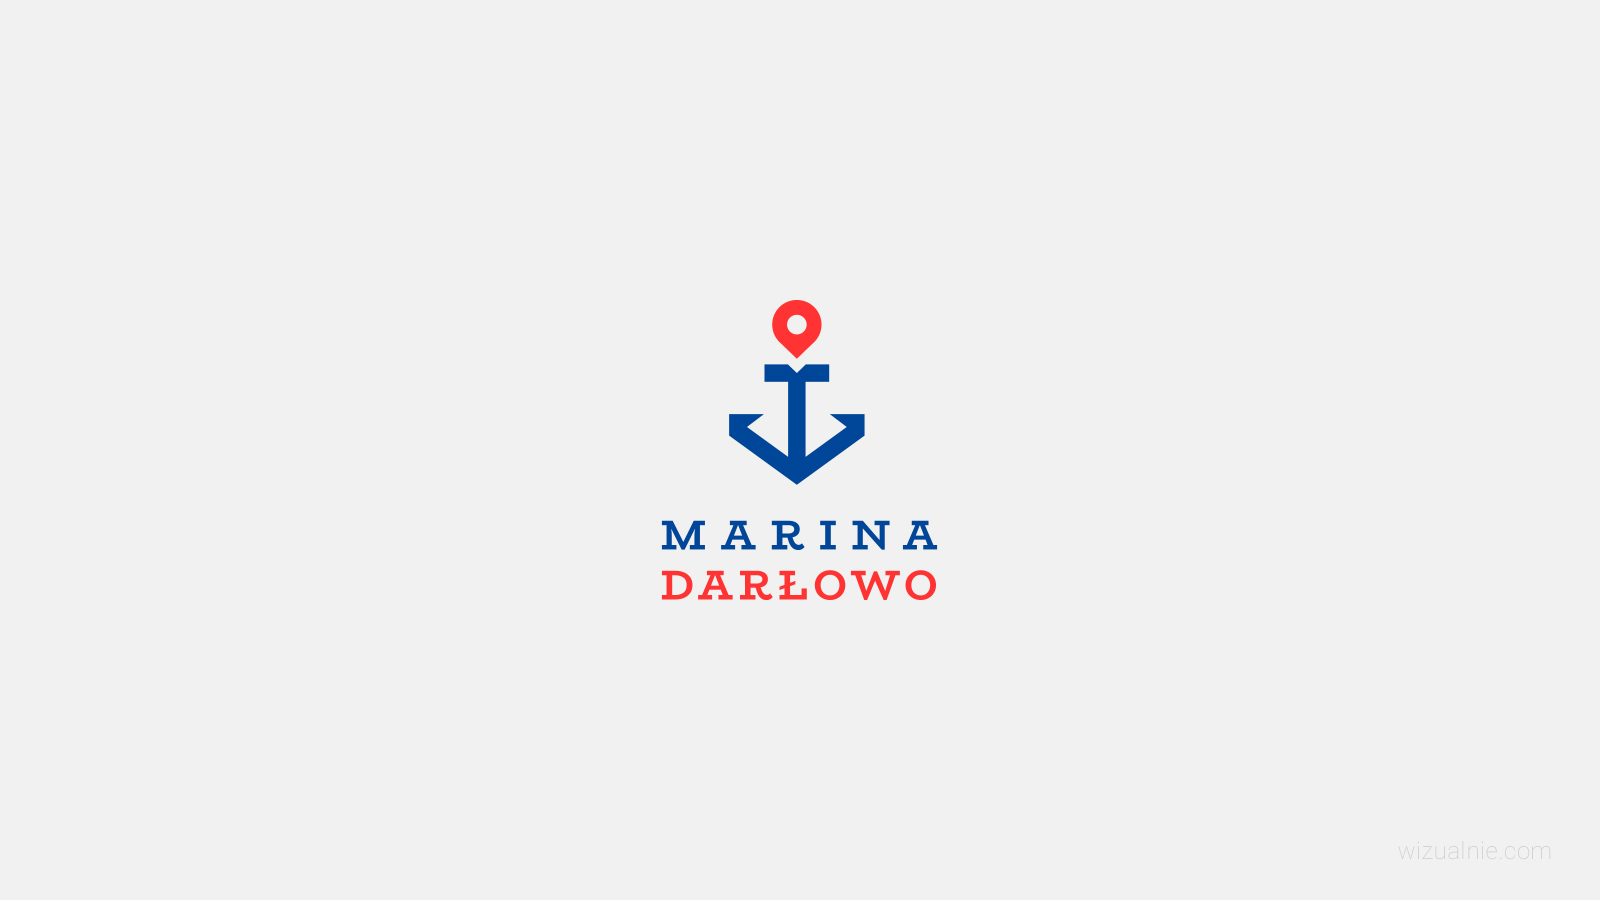 wizualnie-portfolio-marinadarlowo-logo-01-1